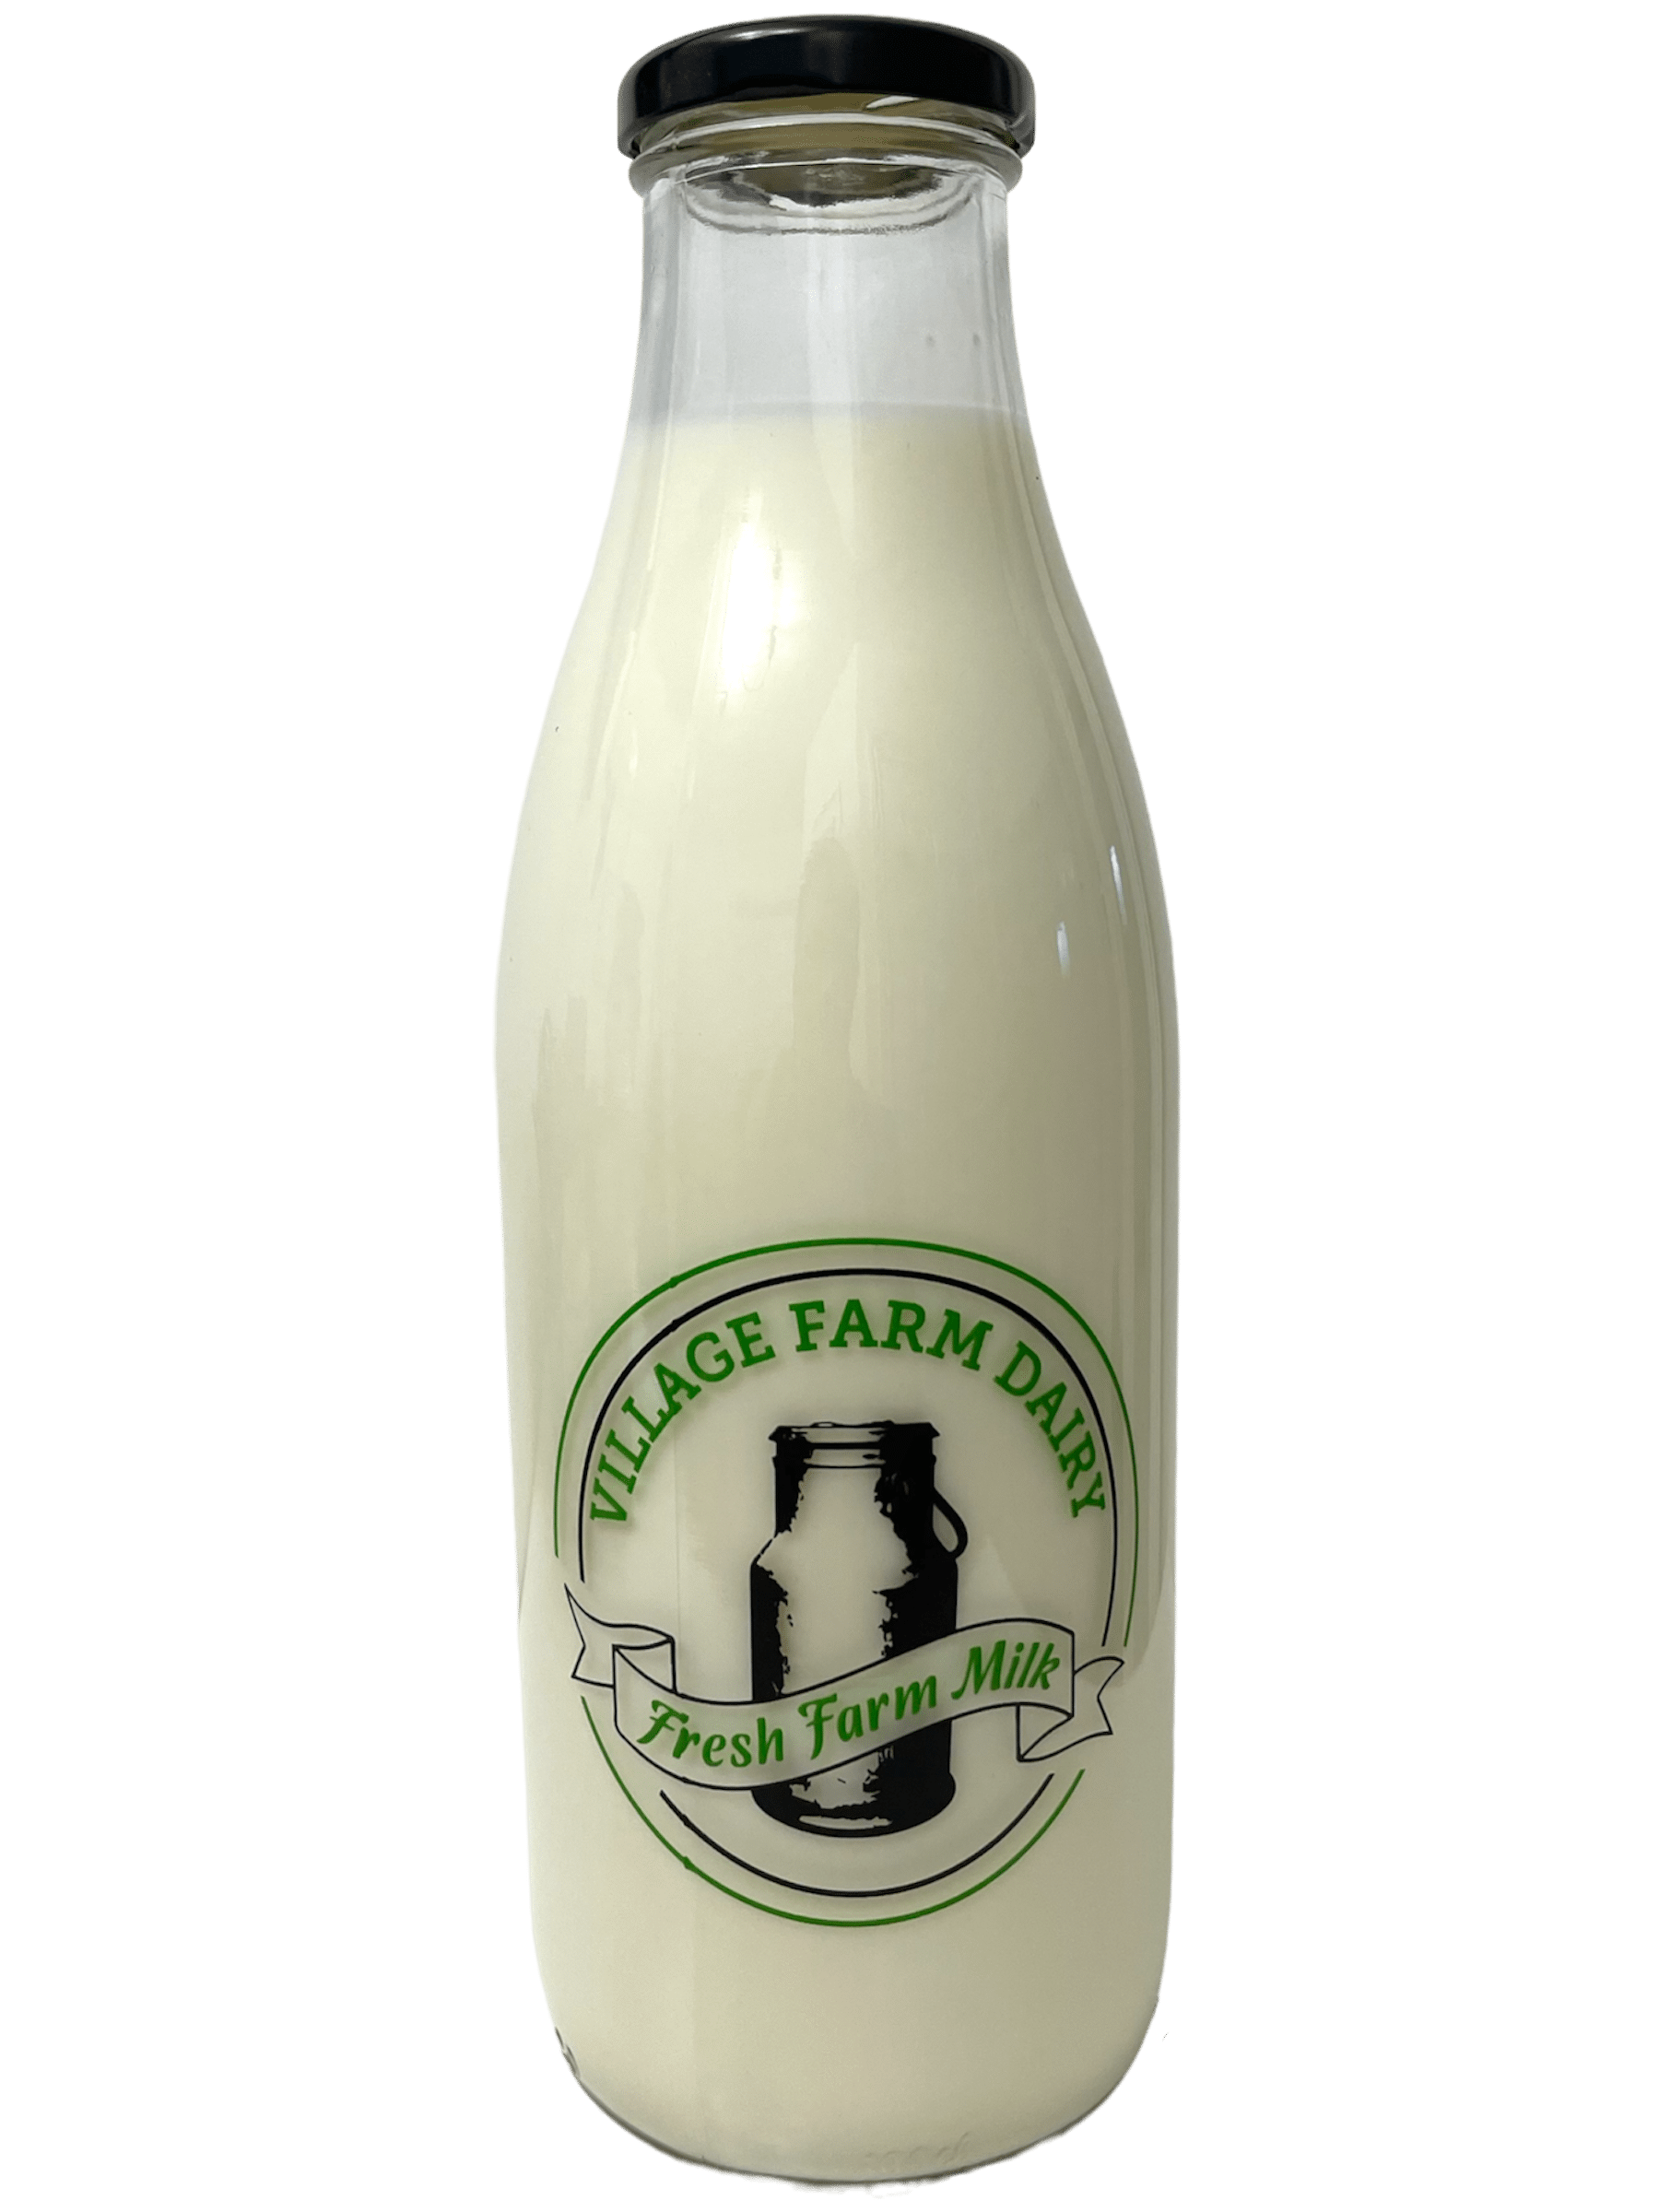 Village Farm Dairy - www.Kelis.info #KelisTheBottleBank